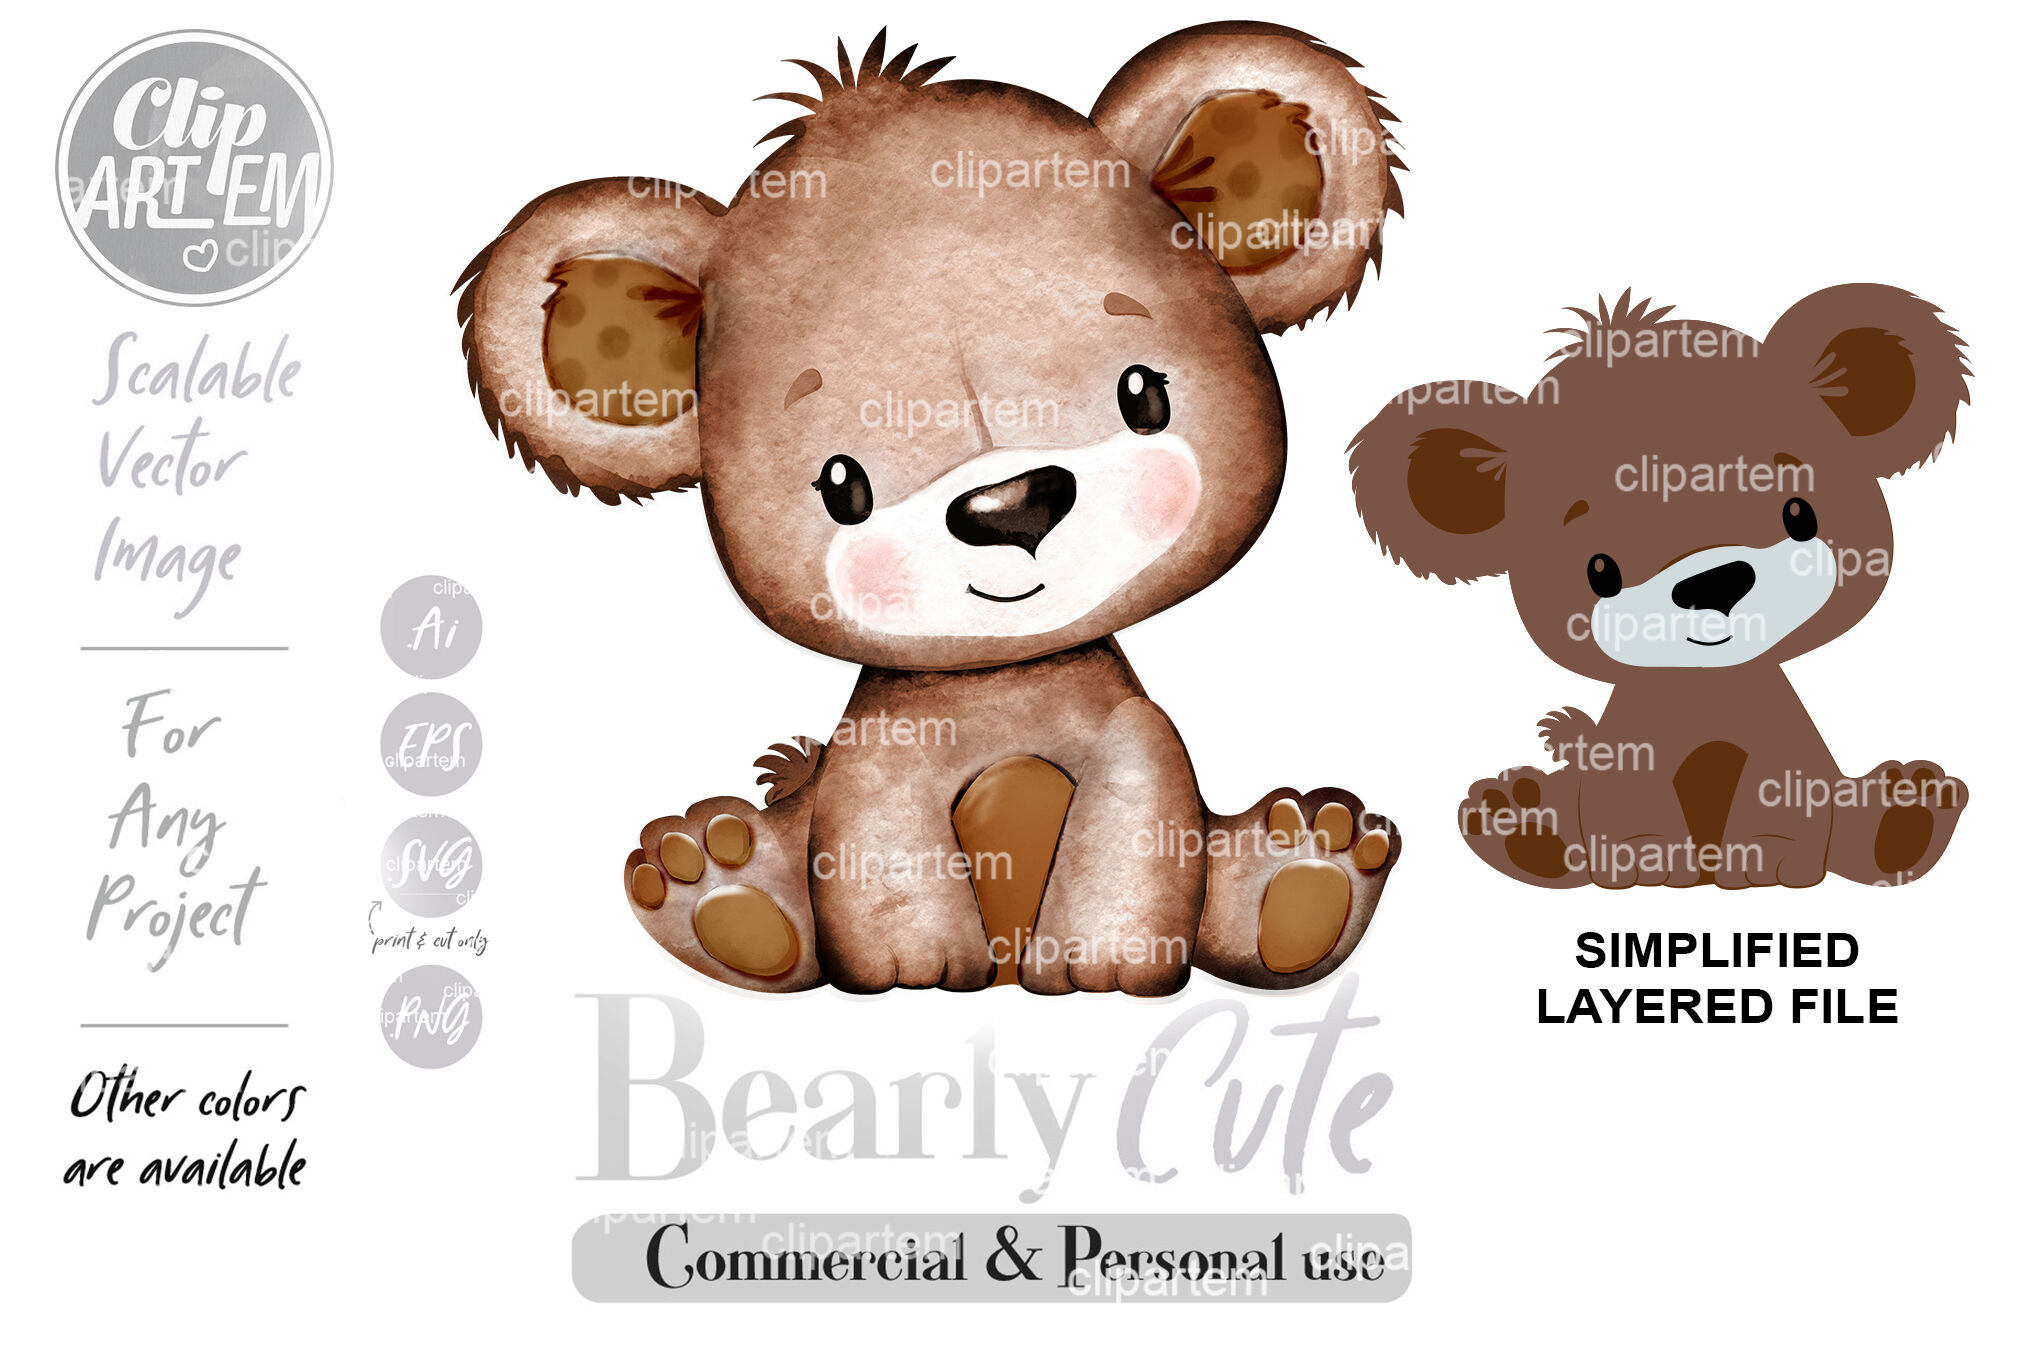 cute brown bear clipart